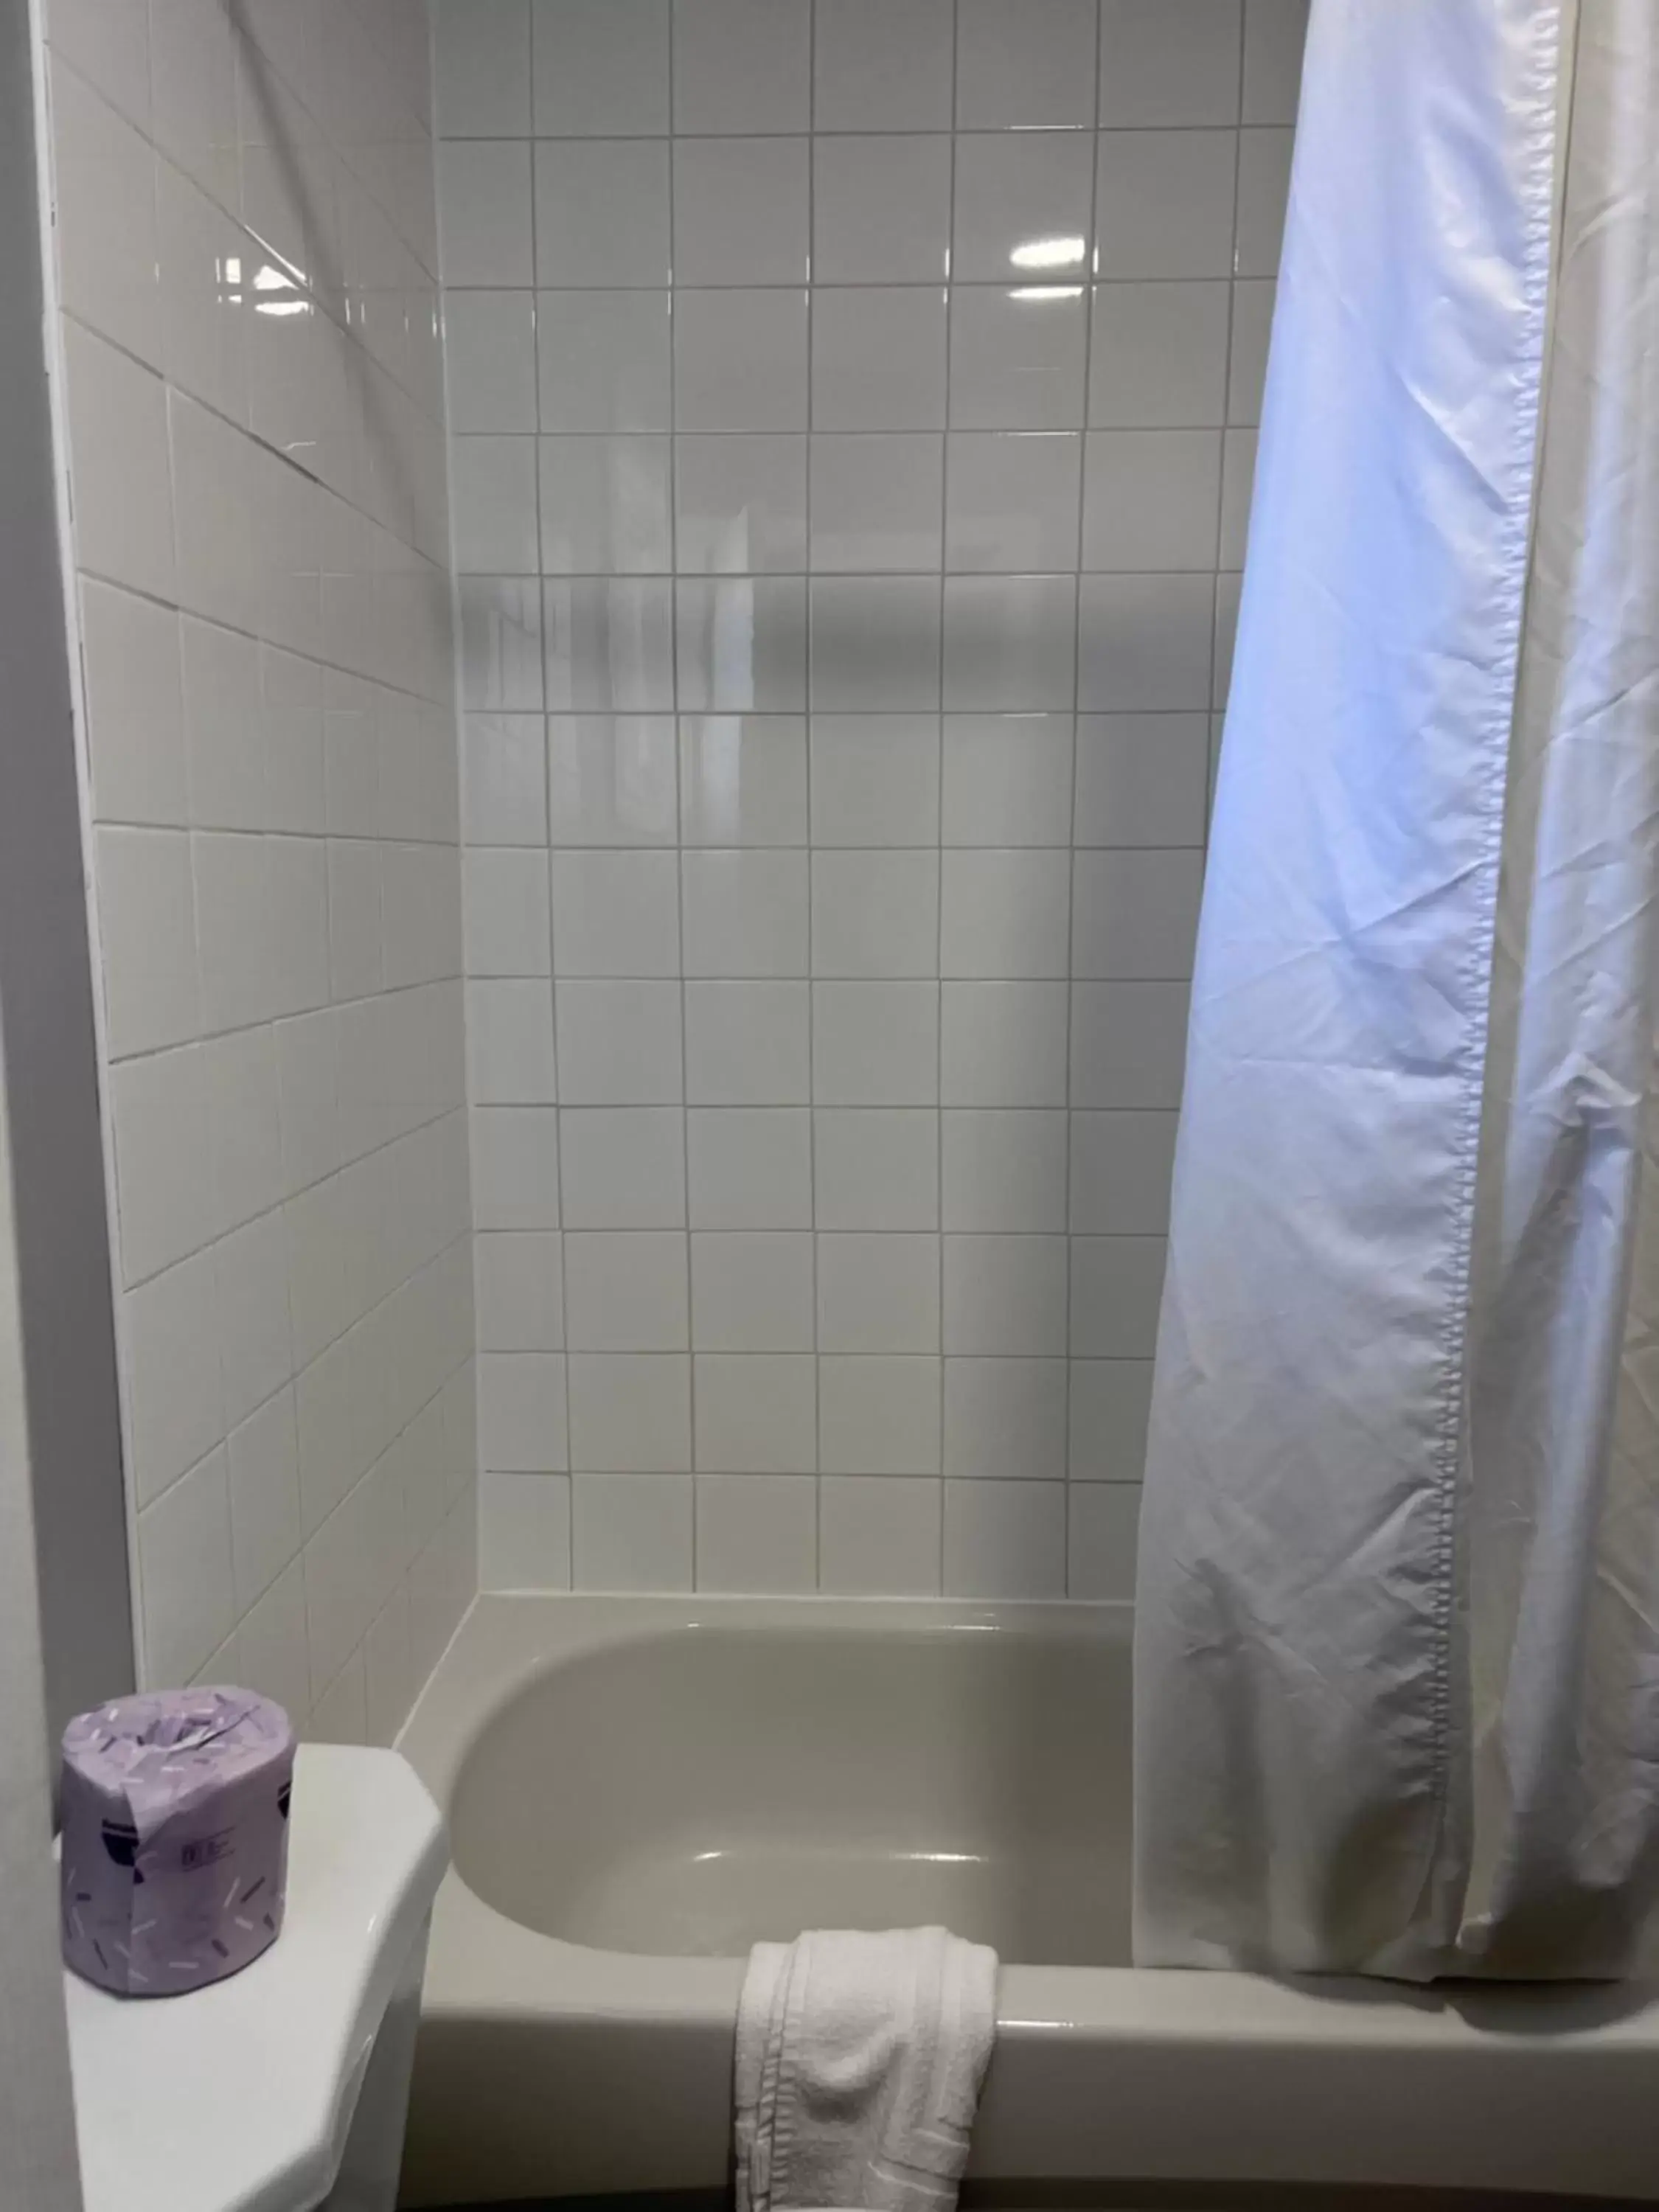 Bathroom in Knights Inn - Park Villa Motel, Midland